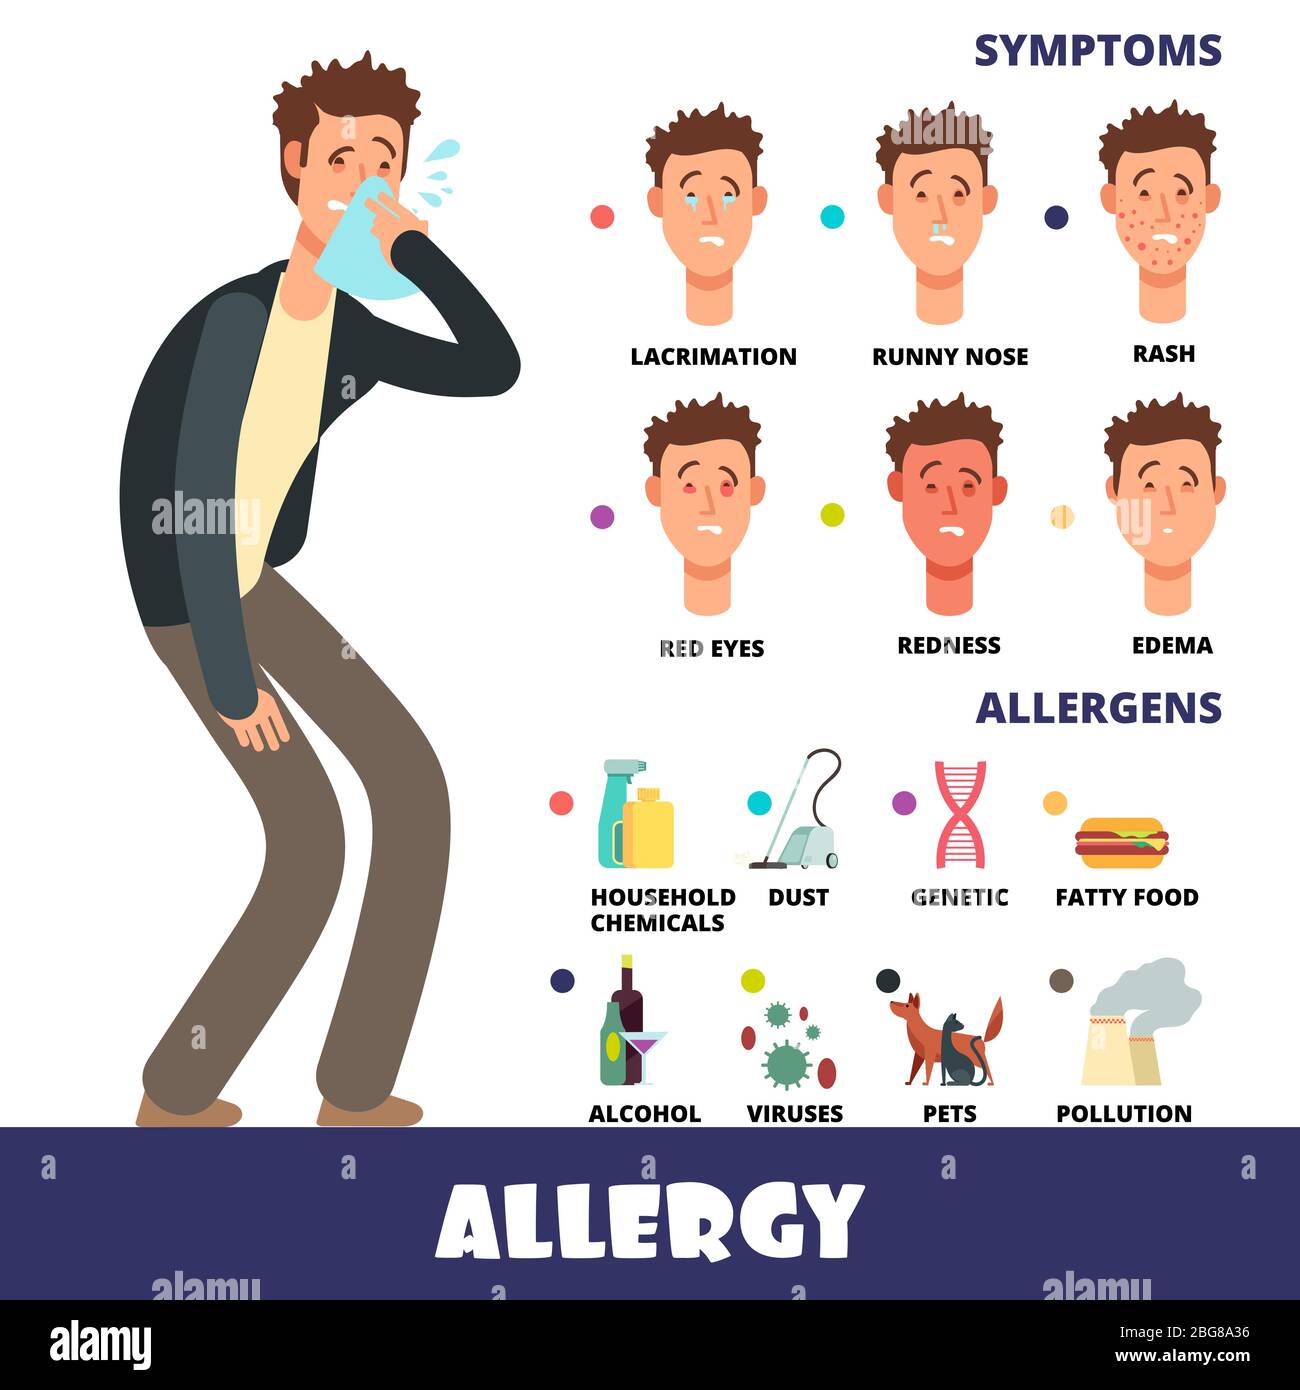 Caricature stye vecteur allergie infographies avec allergènes et symptômes d'allergie. Symptôme yeux rouges allergiques et démangeaisons, allergie illustration saisonnière Illustration de Vecteur